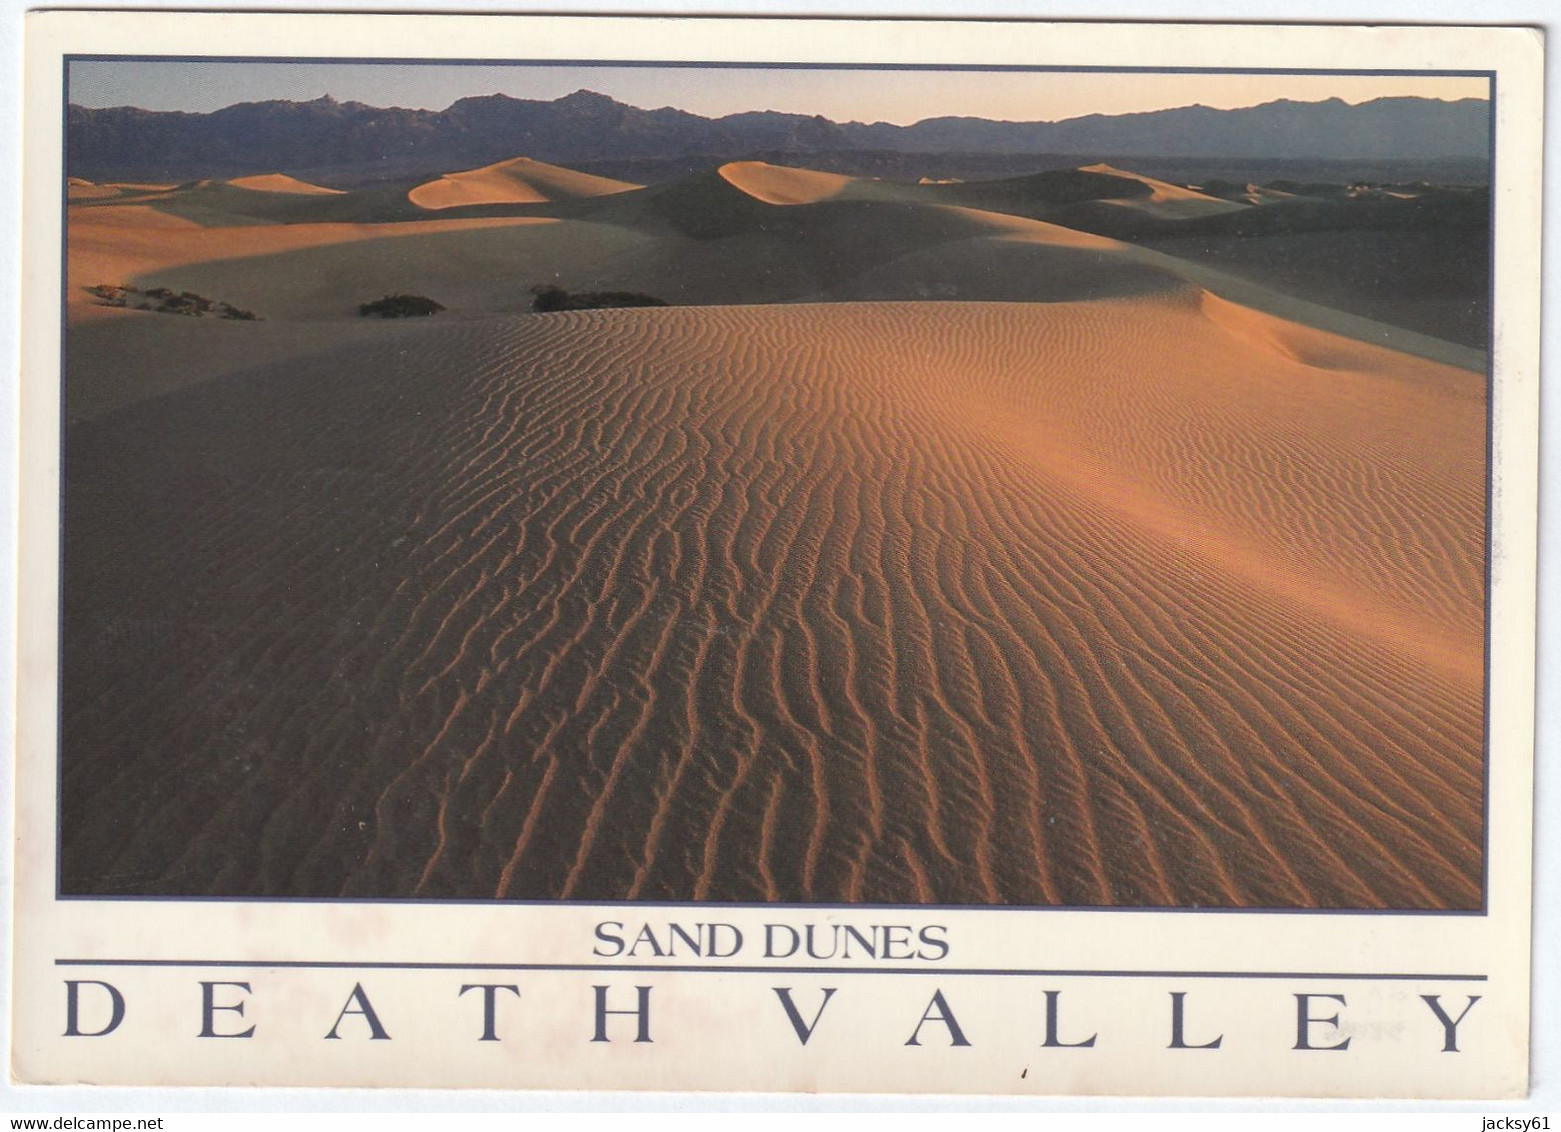 death valley - ( 9 cpm )